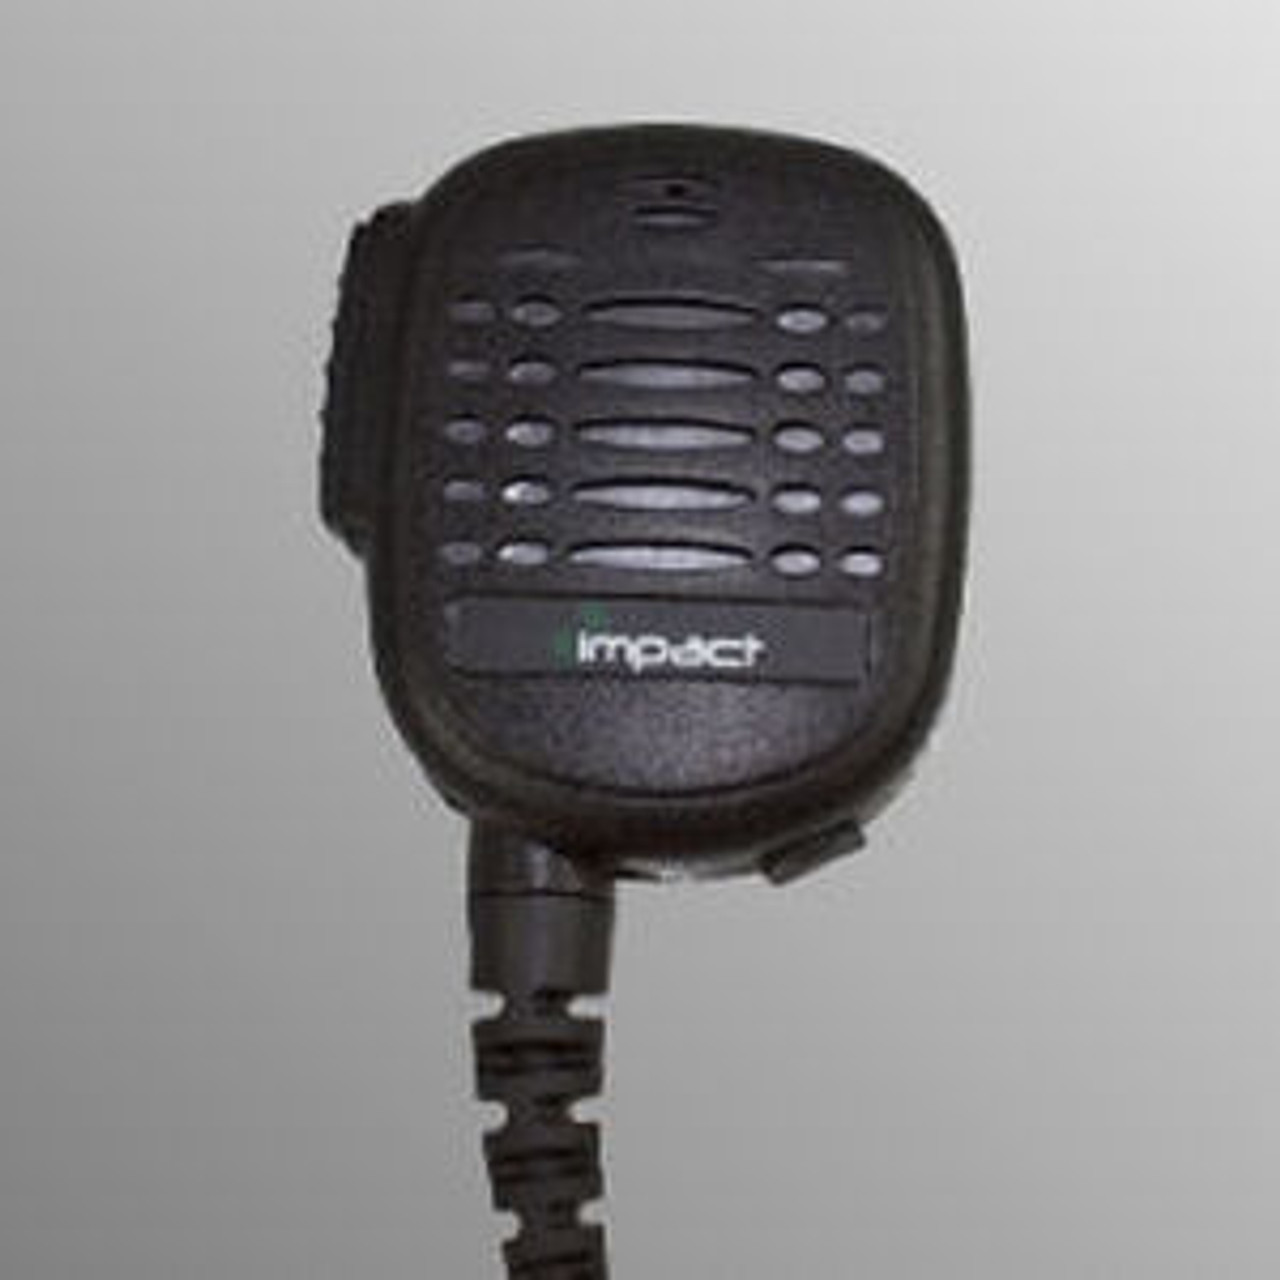 Vertex Standard VX-300 Noise Canceling Speaker Mic.